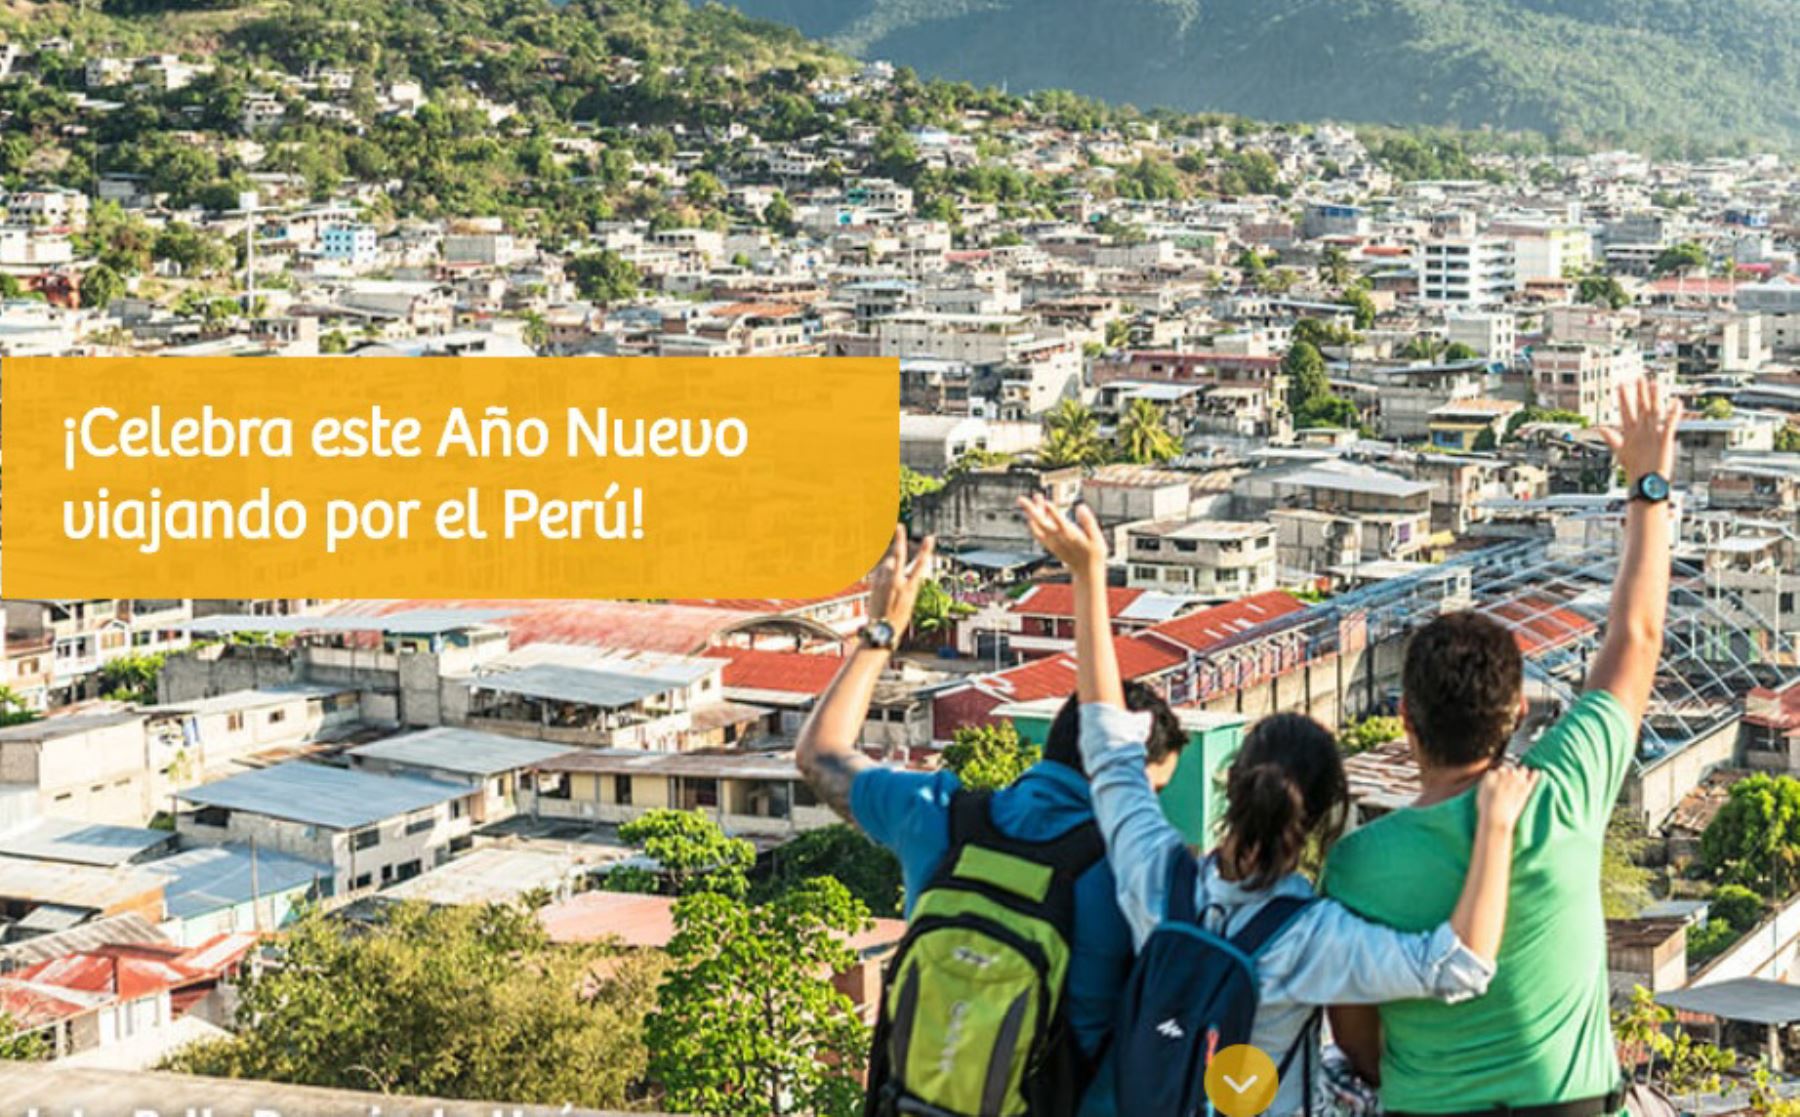 la Comisión de Promoción del Perú para la Exportación y el Turismo (Promperú) invita a recibir el Año Nuevo viajando por el país con las ofertas y promociones de hasta 58% de descuento que consigna el portal de viajes www.ytuqueplanes.com.